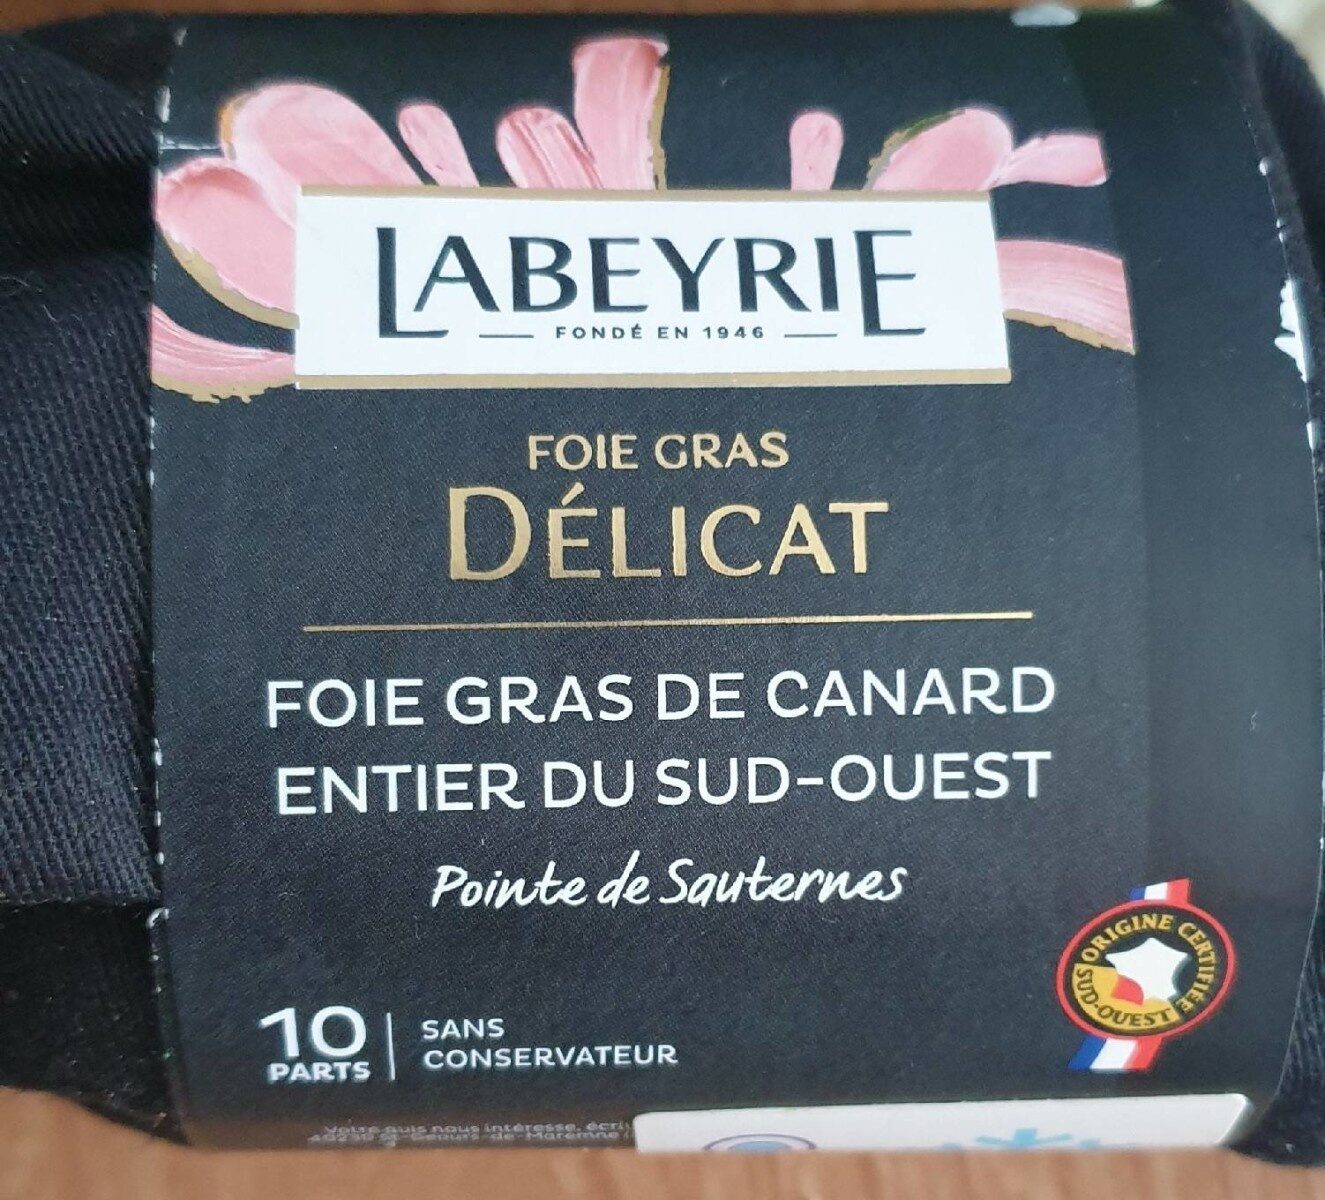 Foie gras de canard entier du Sud Ouest délicat - Produit - en